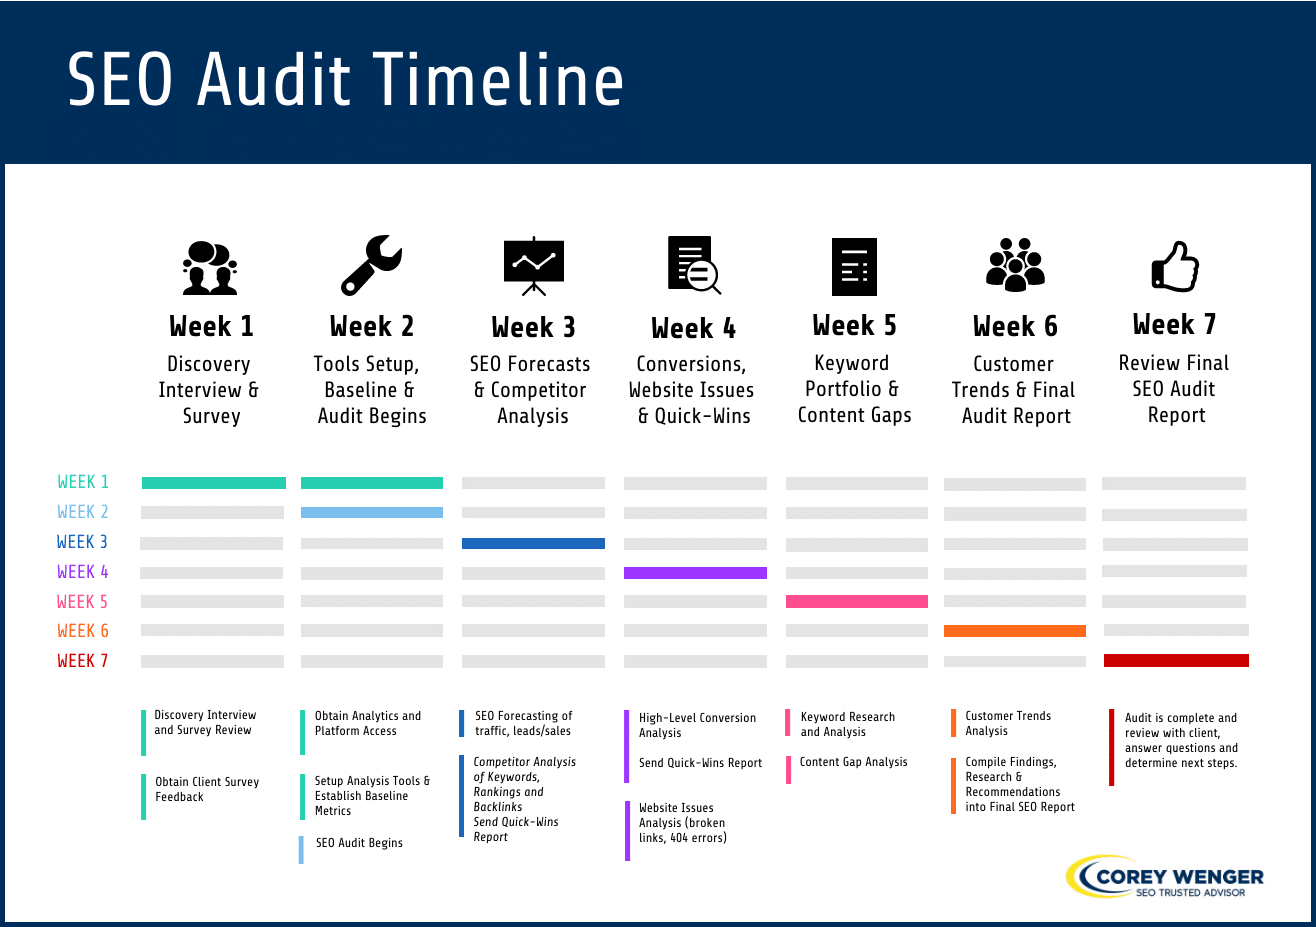 Corey Wenger SEO Audit Timeline Example 2